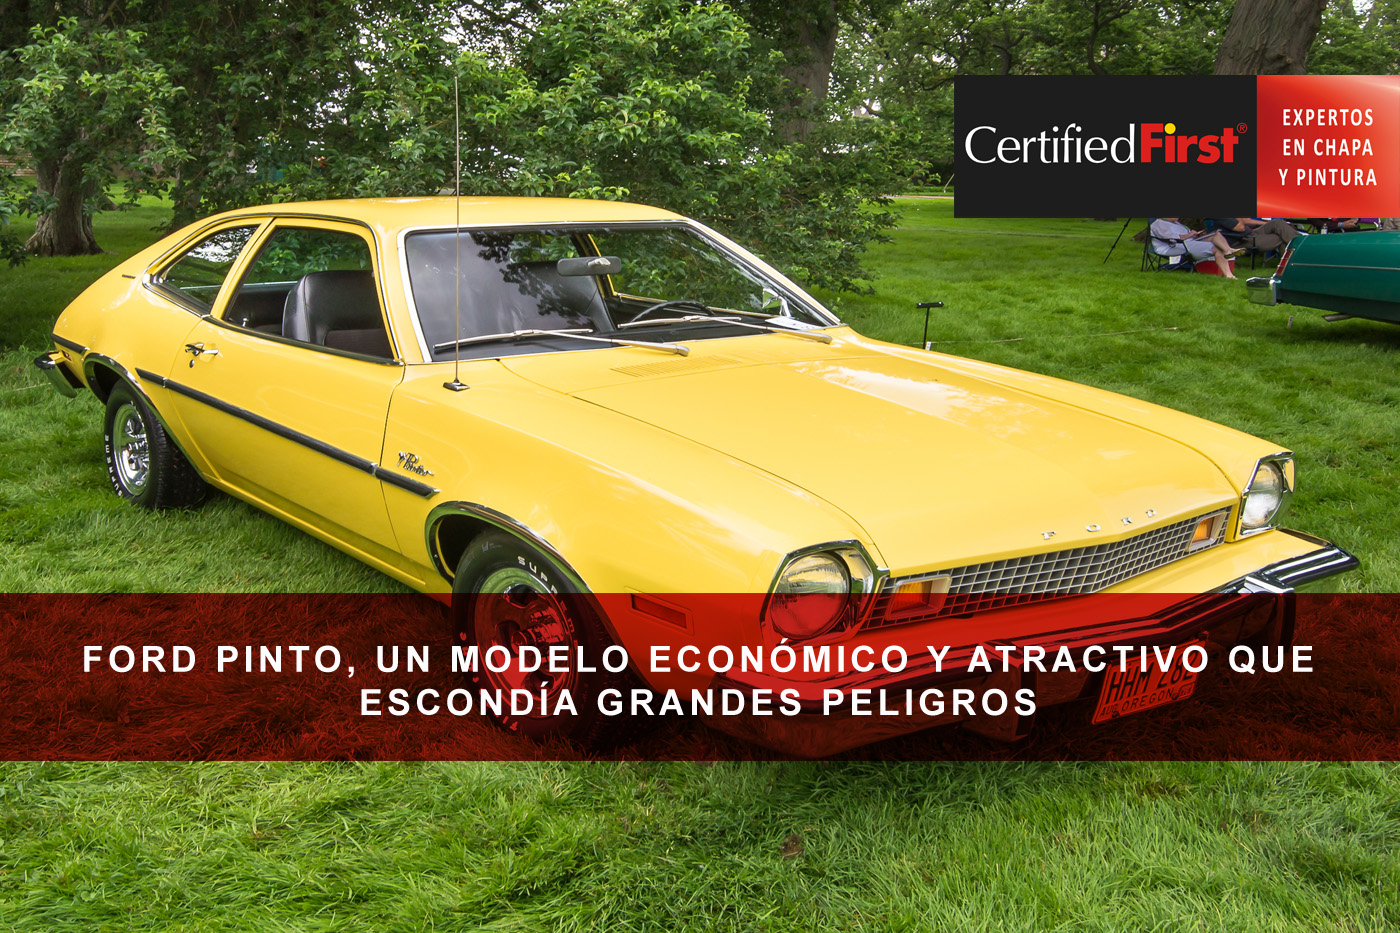 Ford Pinto, un modelo económico y atractivo que escondía grandes peligros